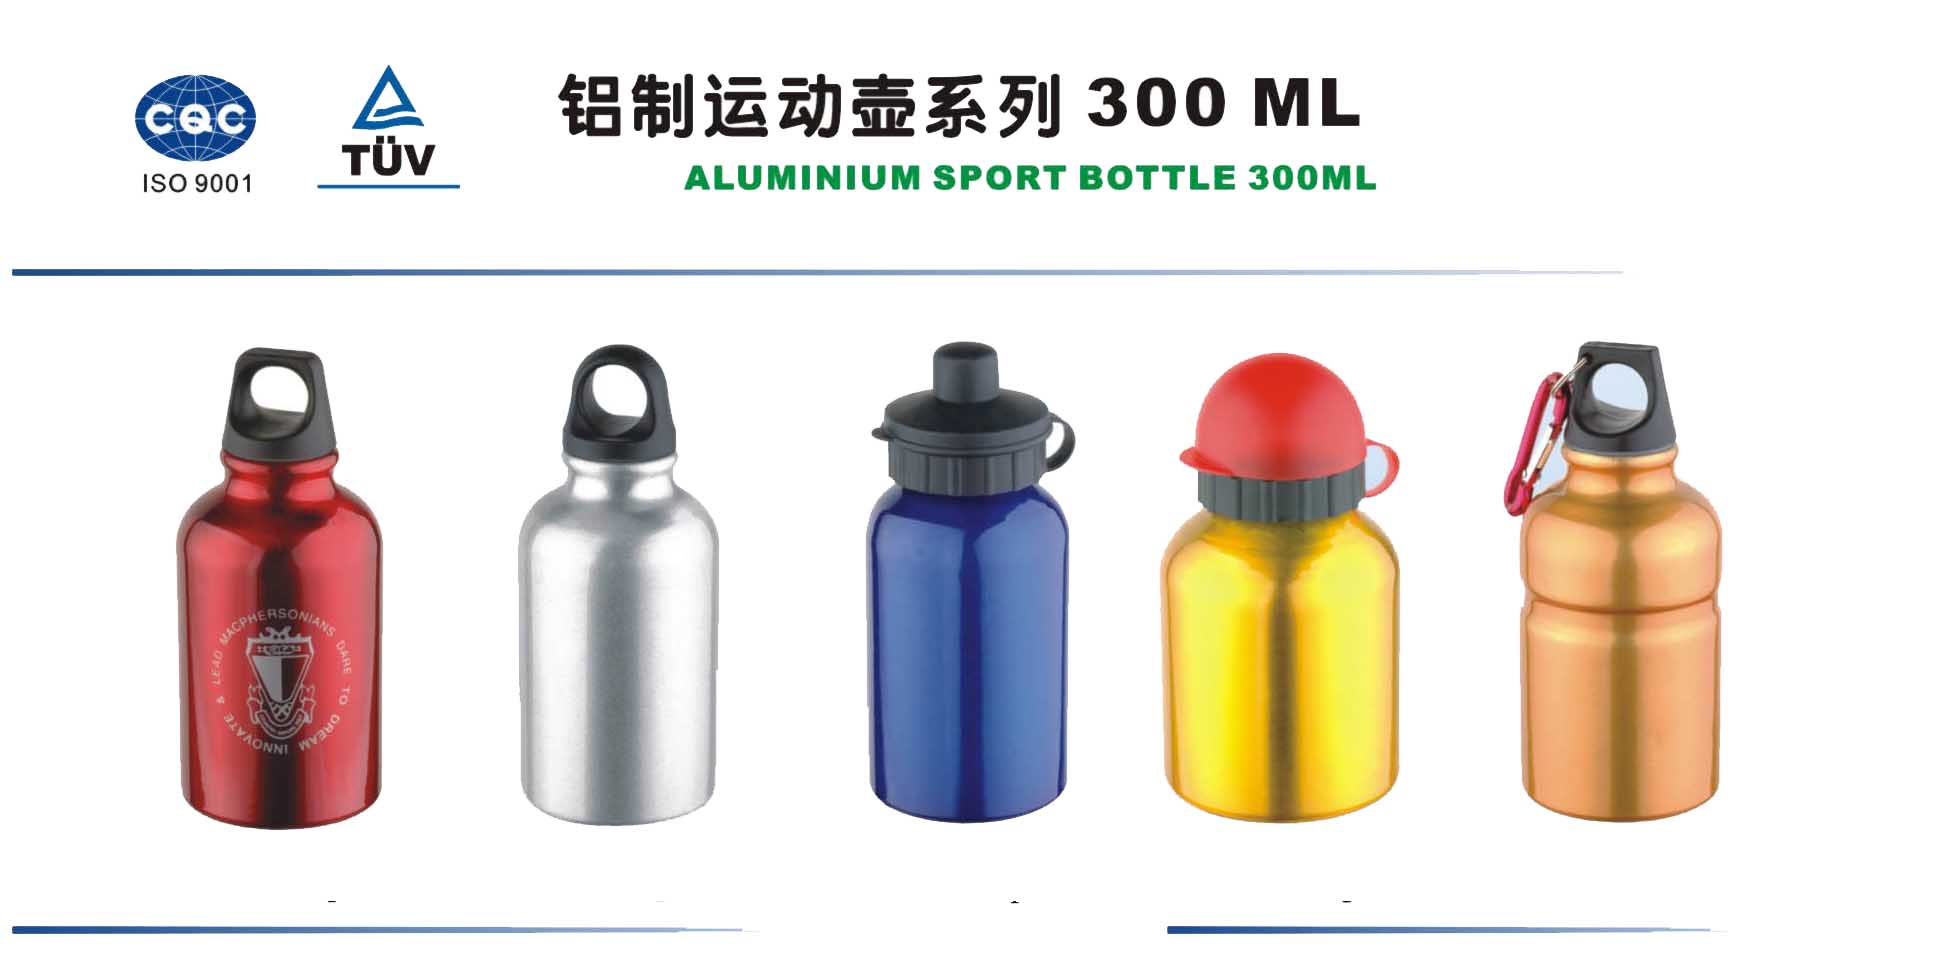  Aluminum Sports Bottle 300ml (Алюминиевый Спорт бутылка 300 мл)